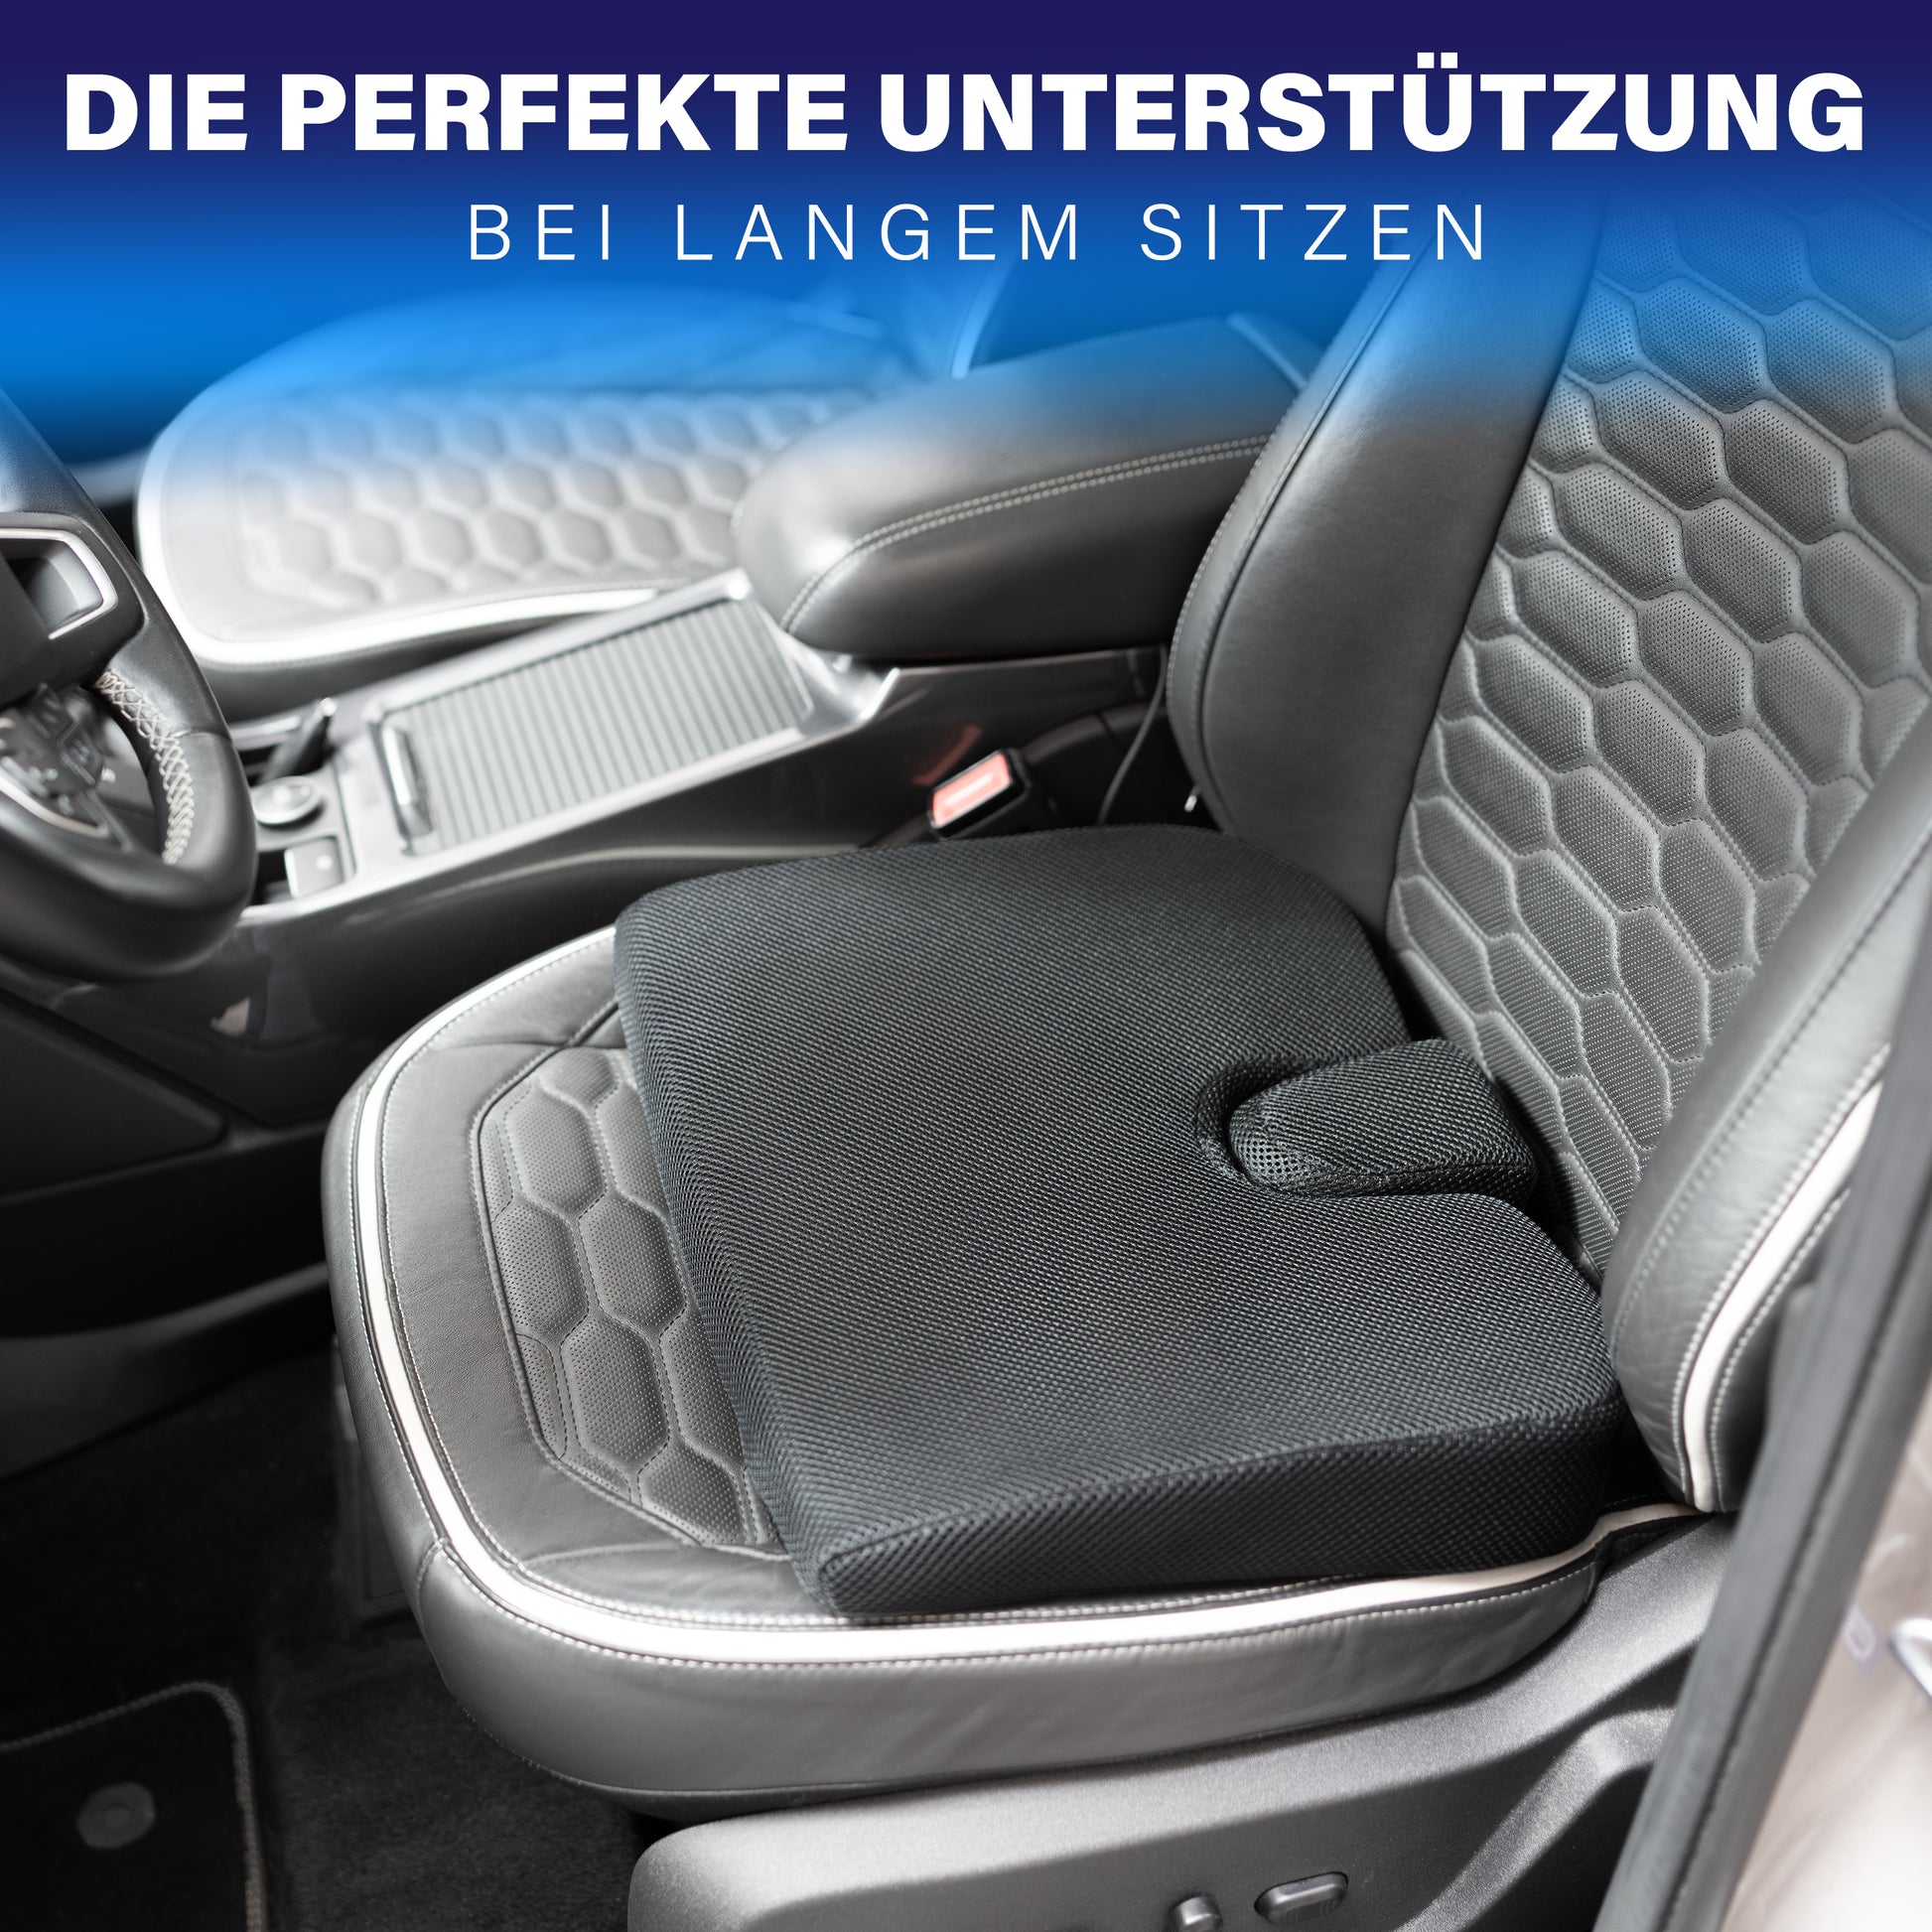 Healthfix® Keilkissen zur Verbesserung der Sitzhaltung - Bequemes  ergonomisches Sitzkeil für Stuhl, Auto & Co.